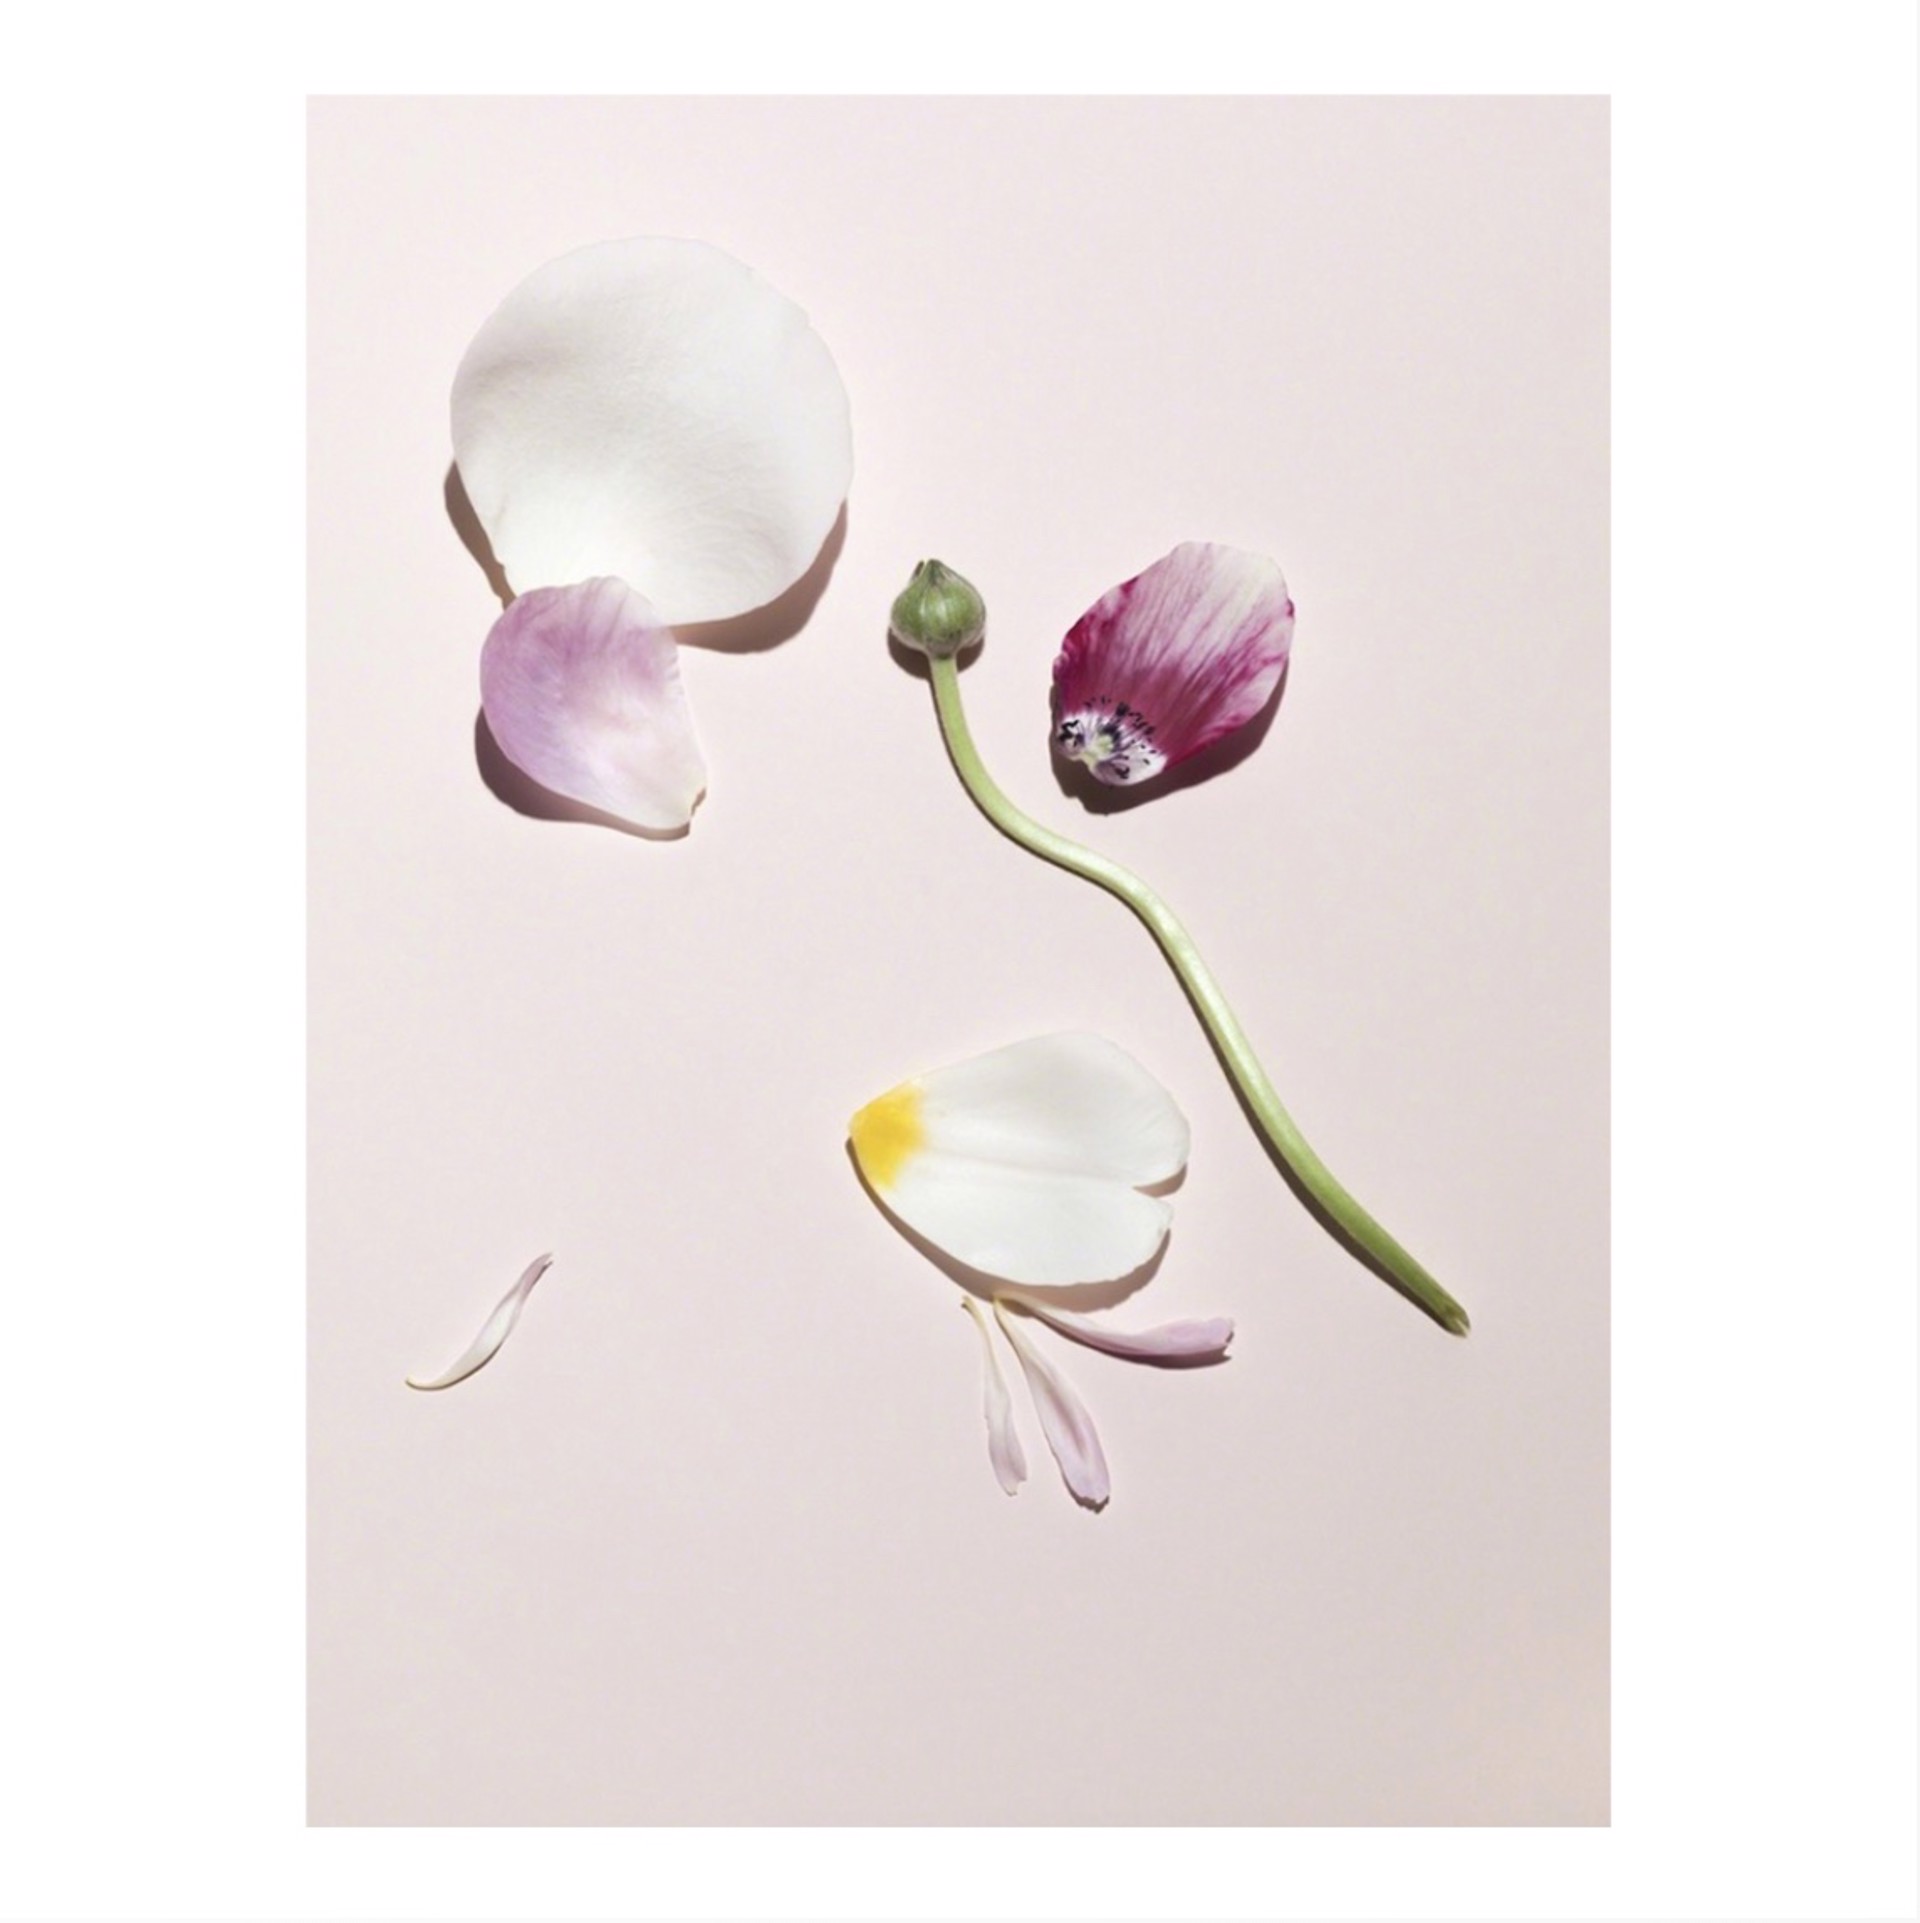 Flower #1 by Gabriella Imperatori-Penn